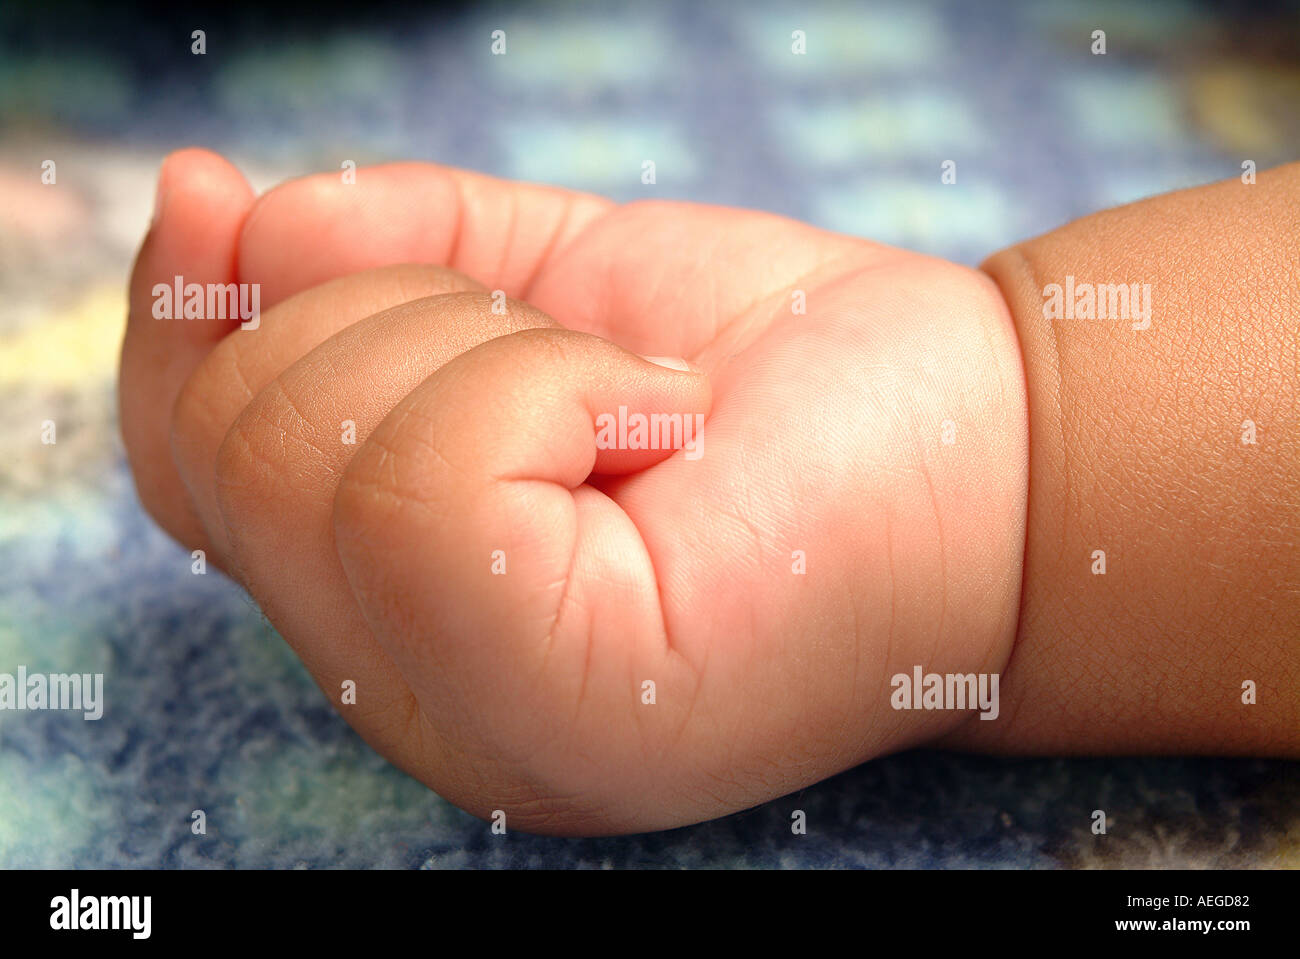 Baby s mondo baby s dita giacente piccolo grazioso rosy pugno polso mano letto dorme appoggiato persona persone kid bambino baby Foto Stock